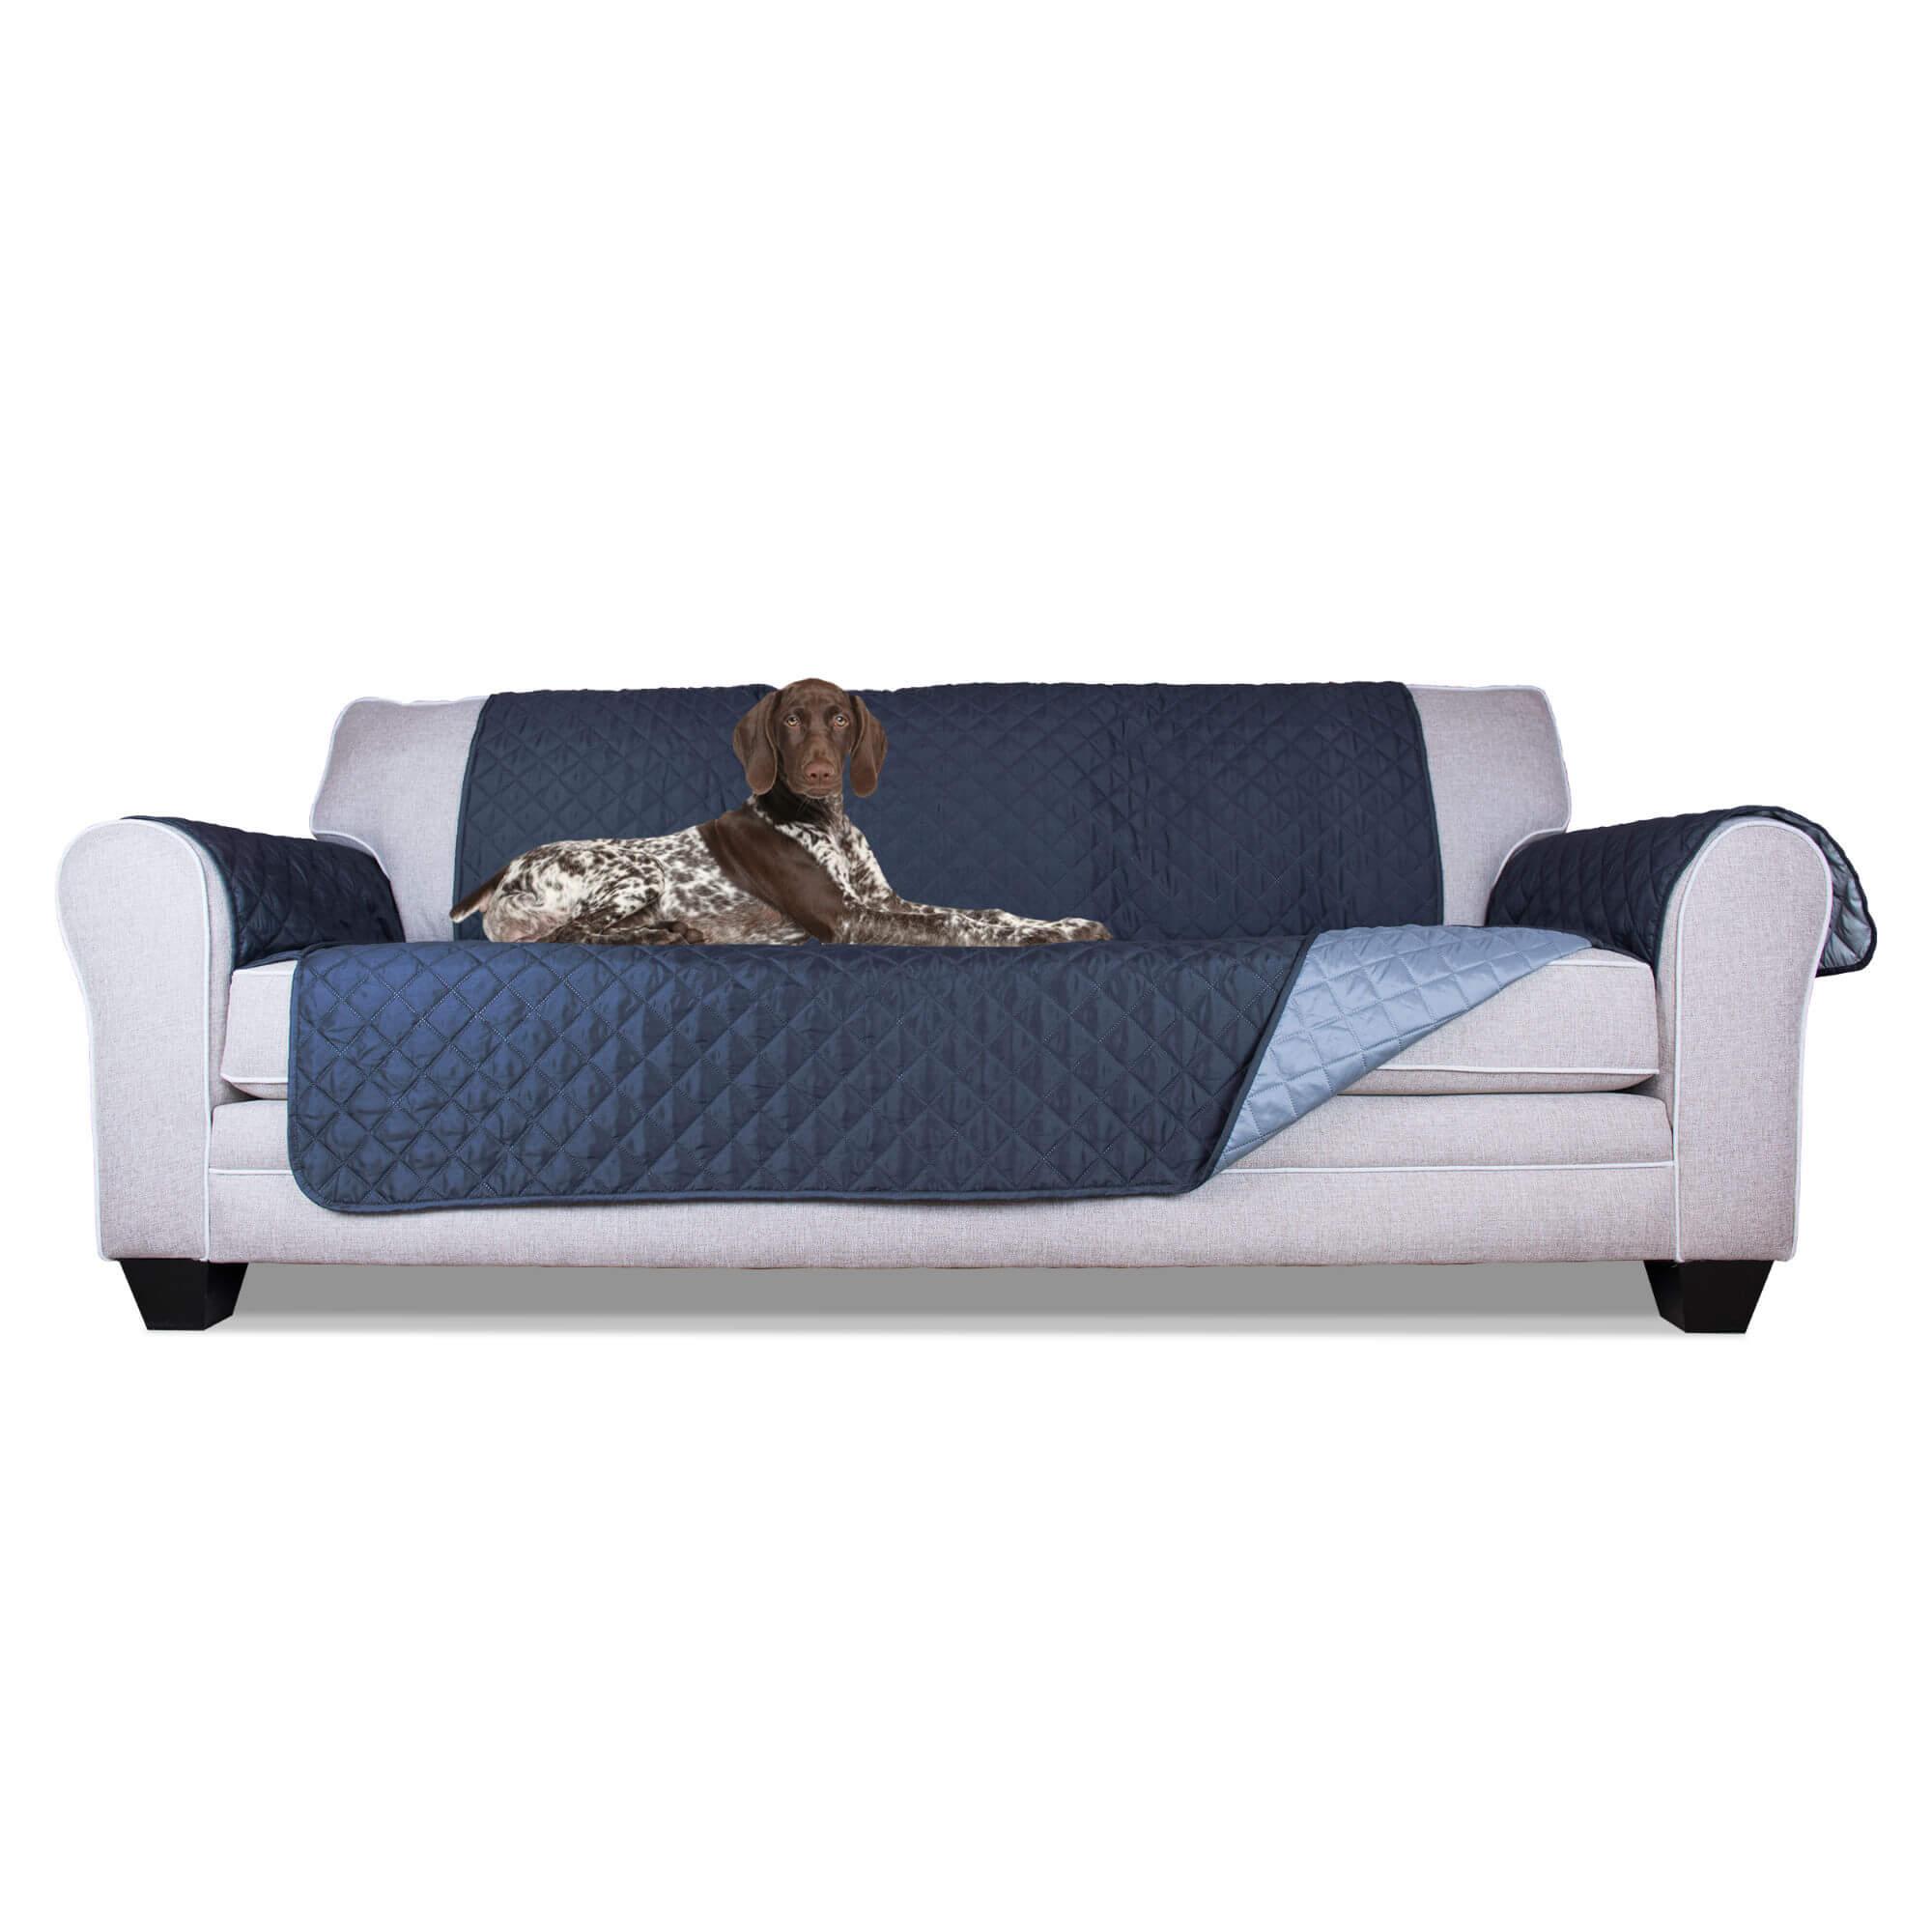 FurHaven Reversible Sofa Protector - Pet Furniture Cover